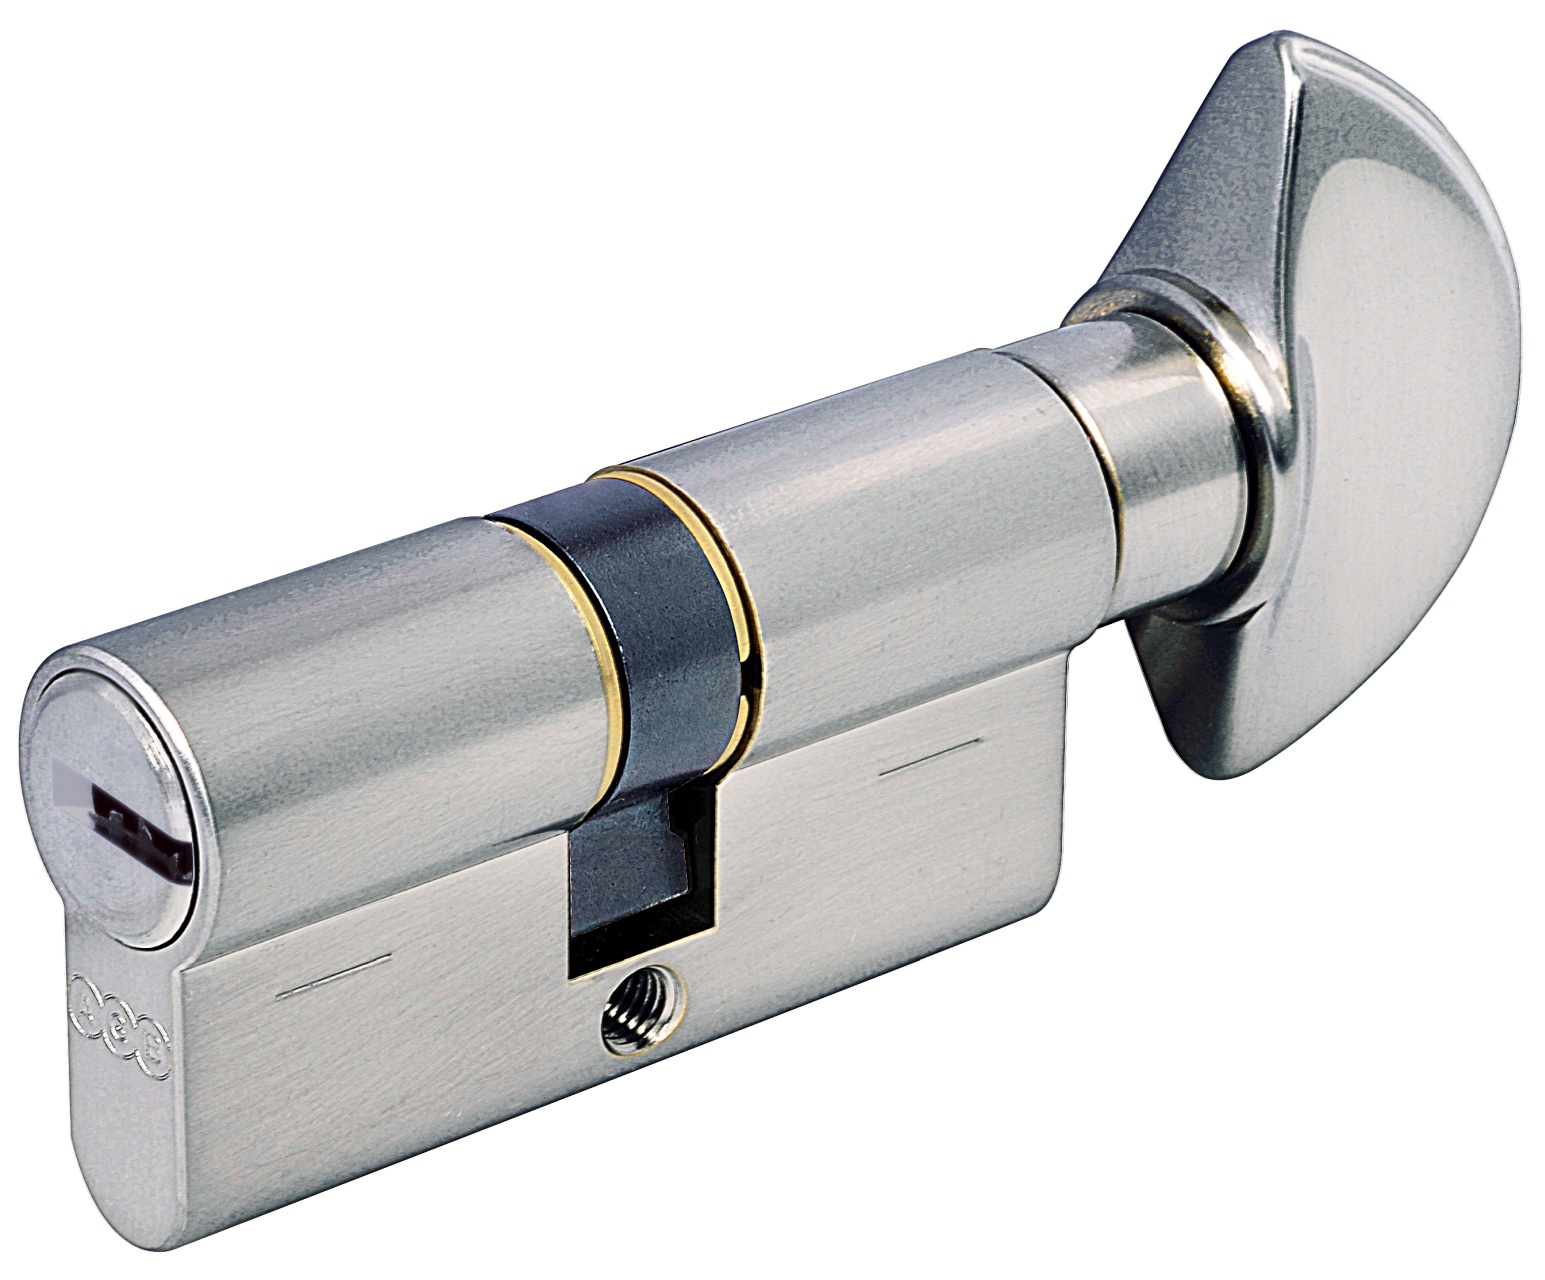 AGB -  Cilindro SCUDO 5000 PS frizionato anti bamping con chiave e pomolo - col. NICHELATO OPACO - lunghezza 100 - misura 35 - 10 - 55